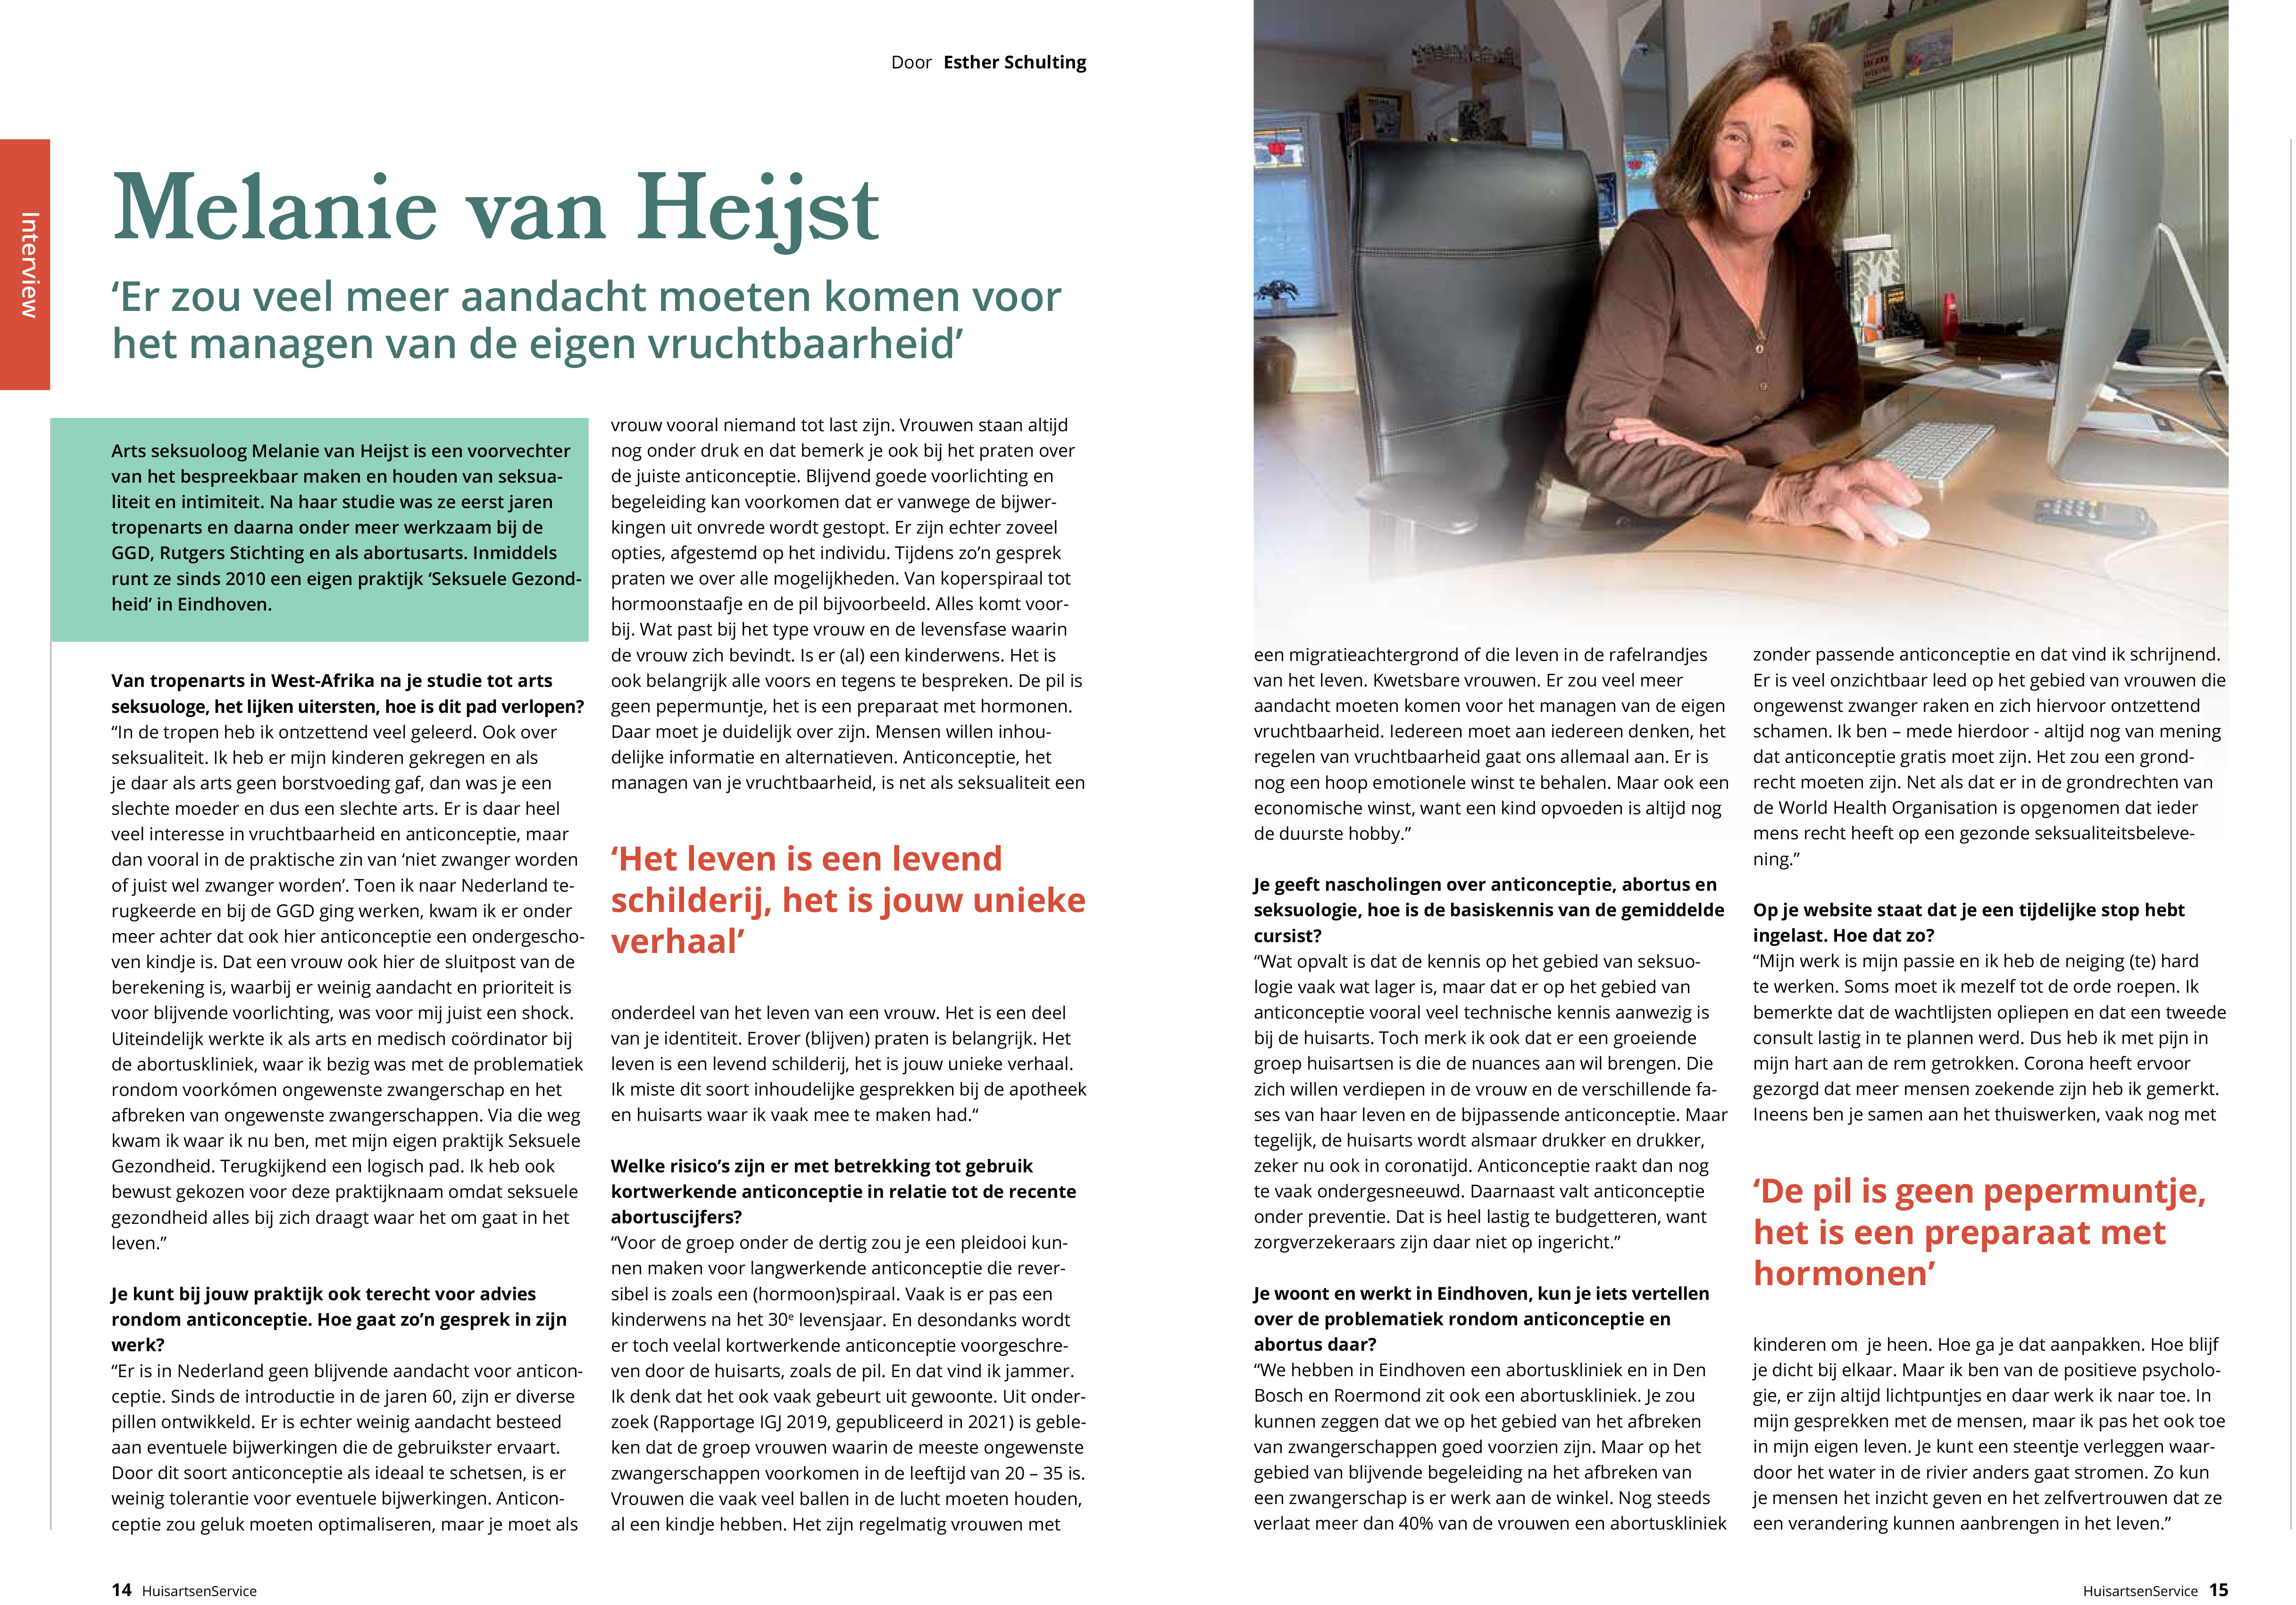 Interview met Melanie van Heijst over anticonceptie in Huisartsen Service: 2021, nummer 4